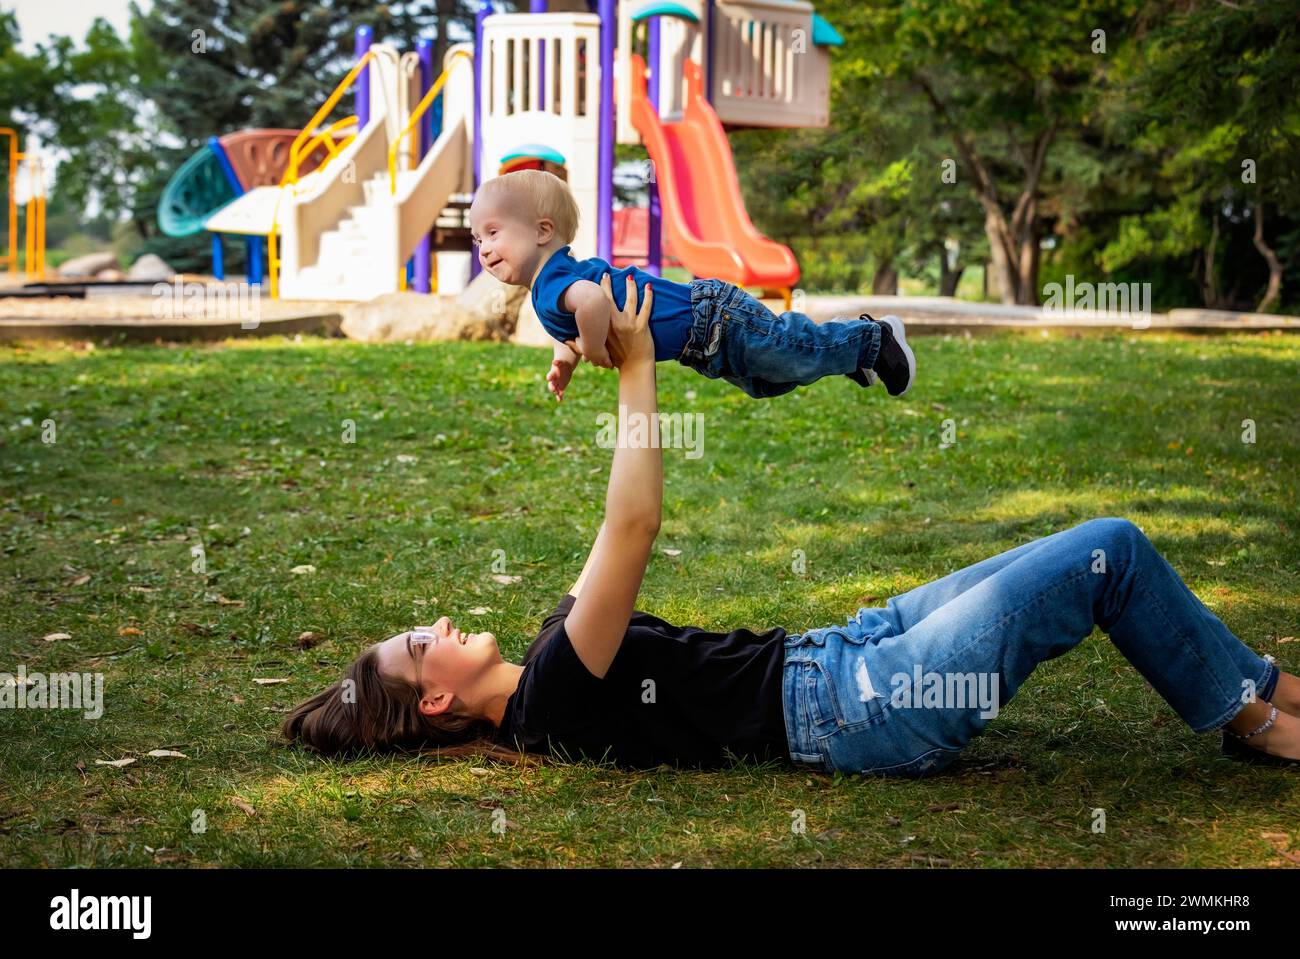 Schwester verbringt schöne Zeit im Freien mit ihrem kleinen Bruder, der das Down-Syndrom hat, in einem Stadtpark an einem warmen Herbstnachmittag Stockfoto